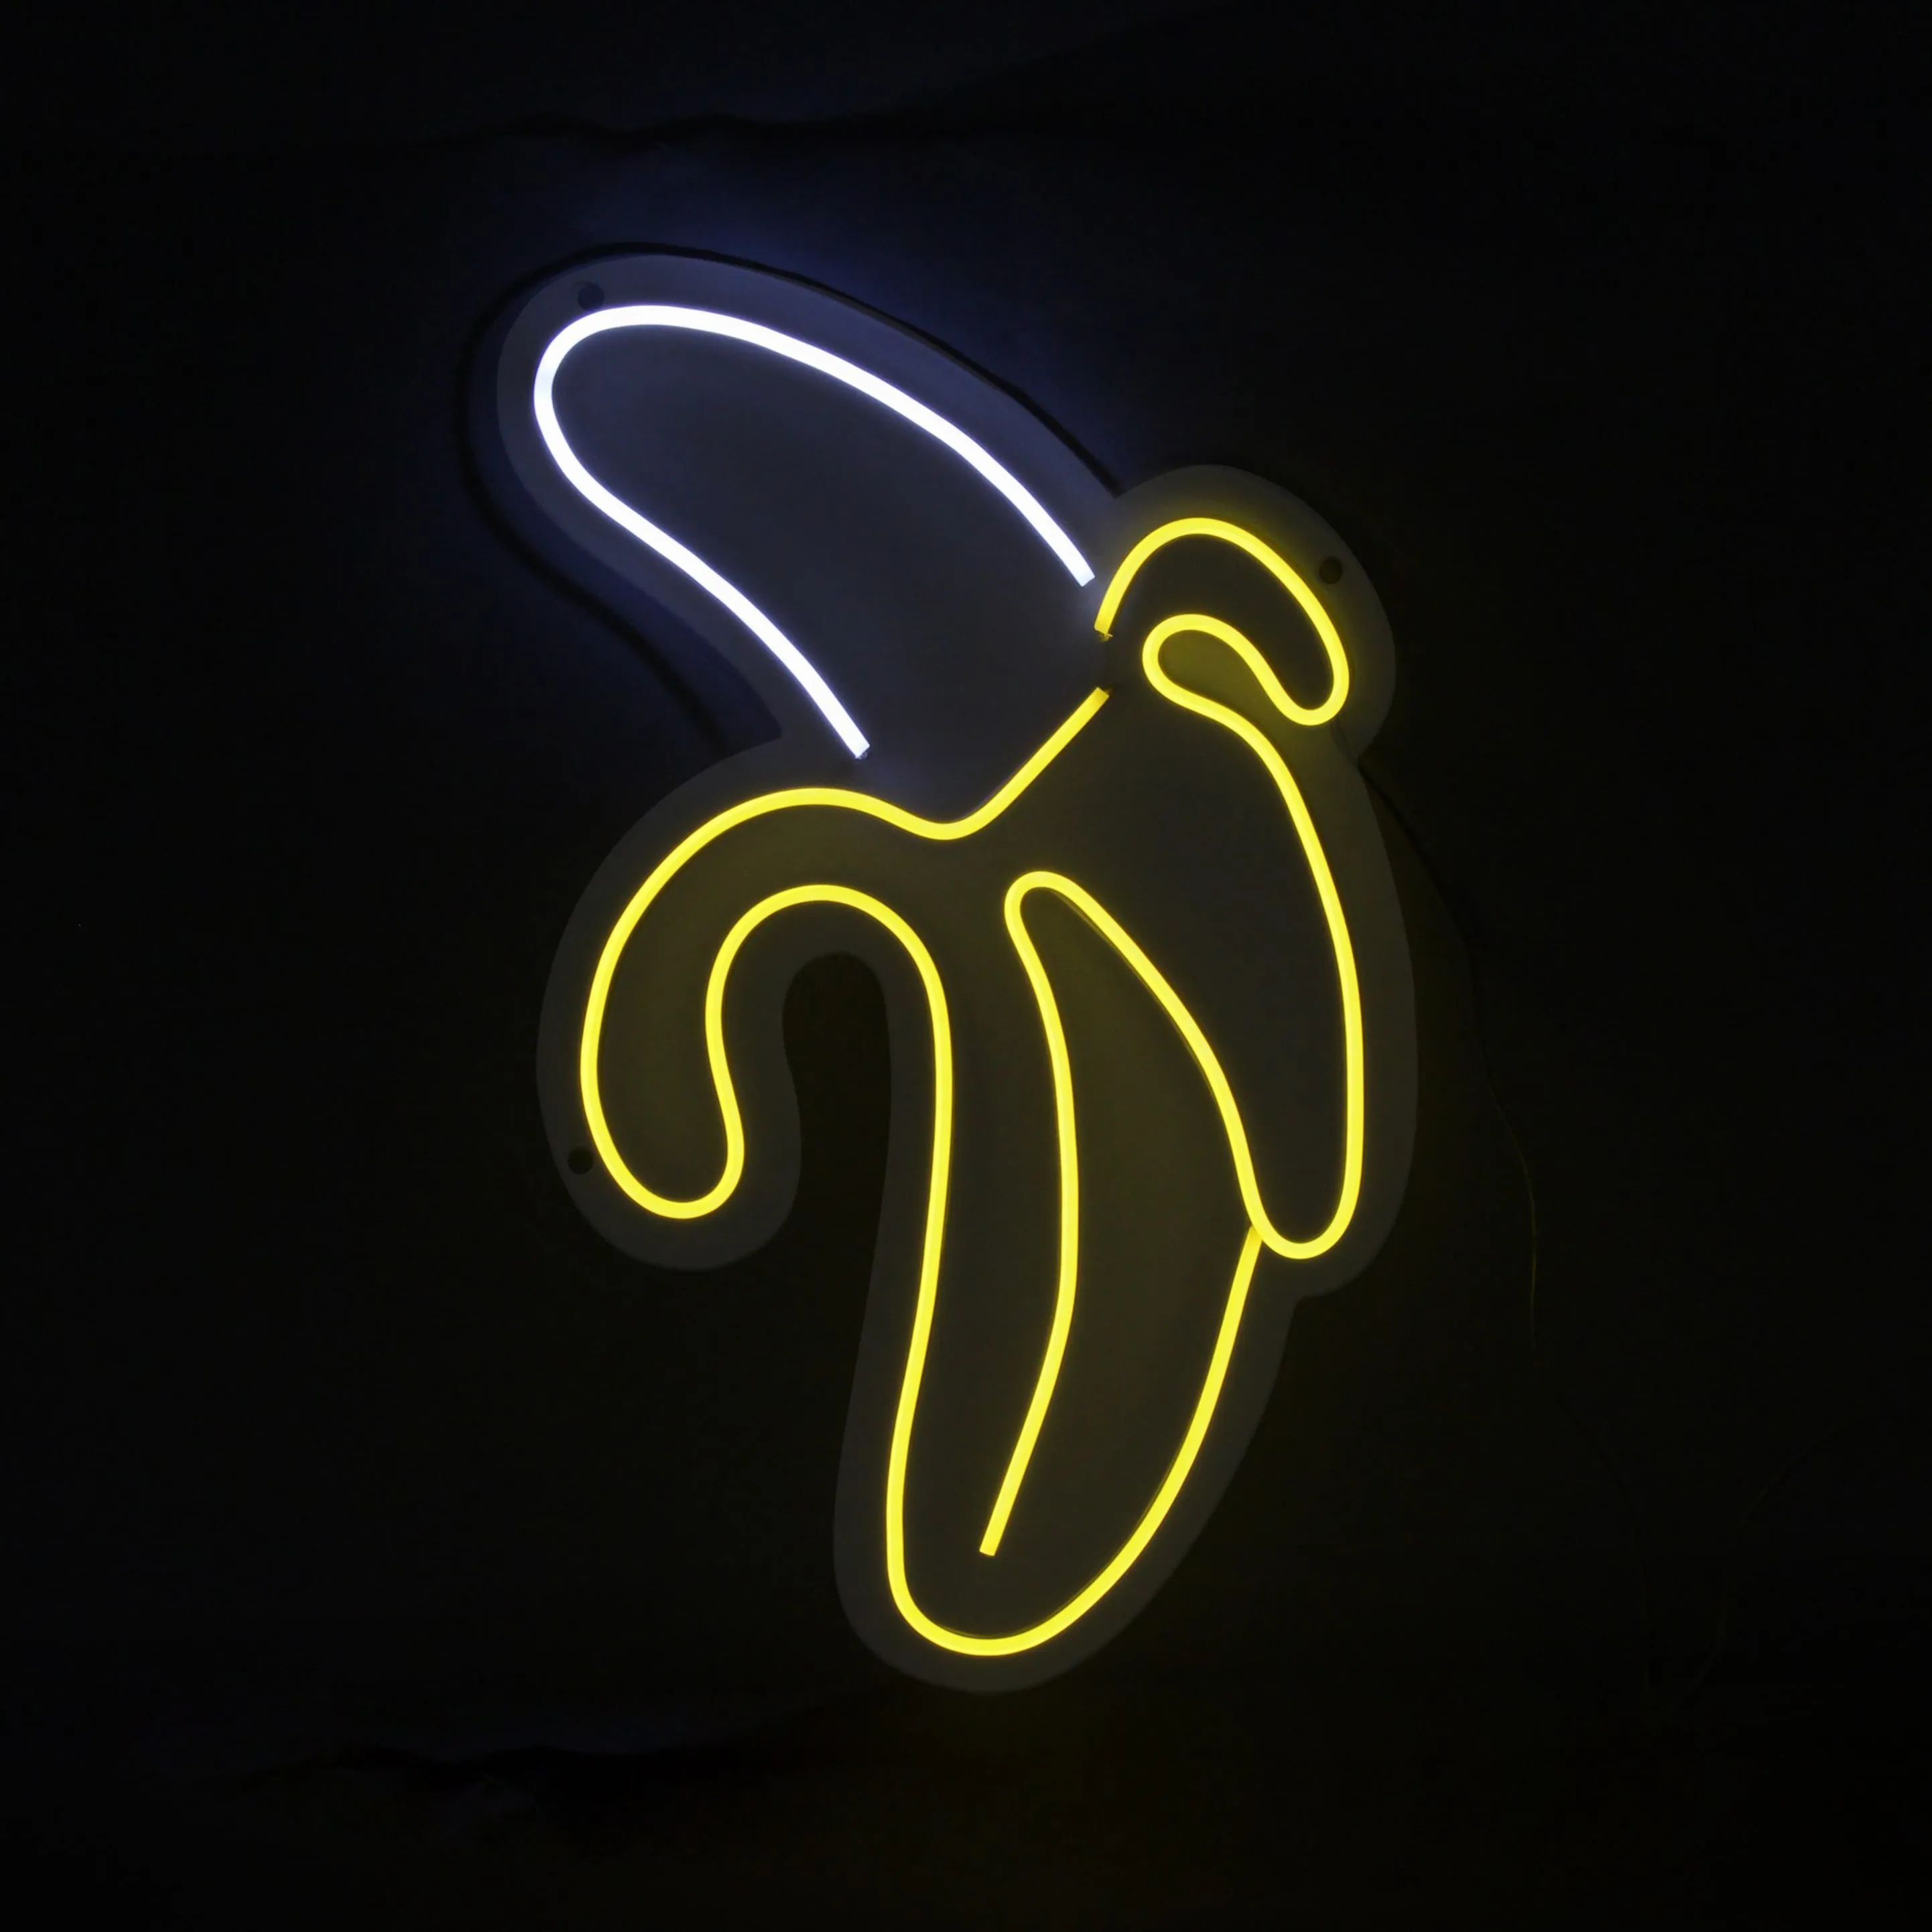 Adm - Insegne Led 'banana' - Colore Giallo